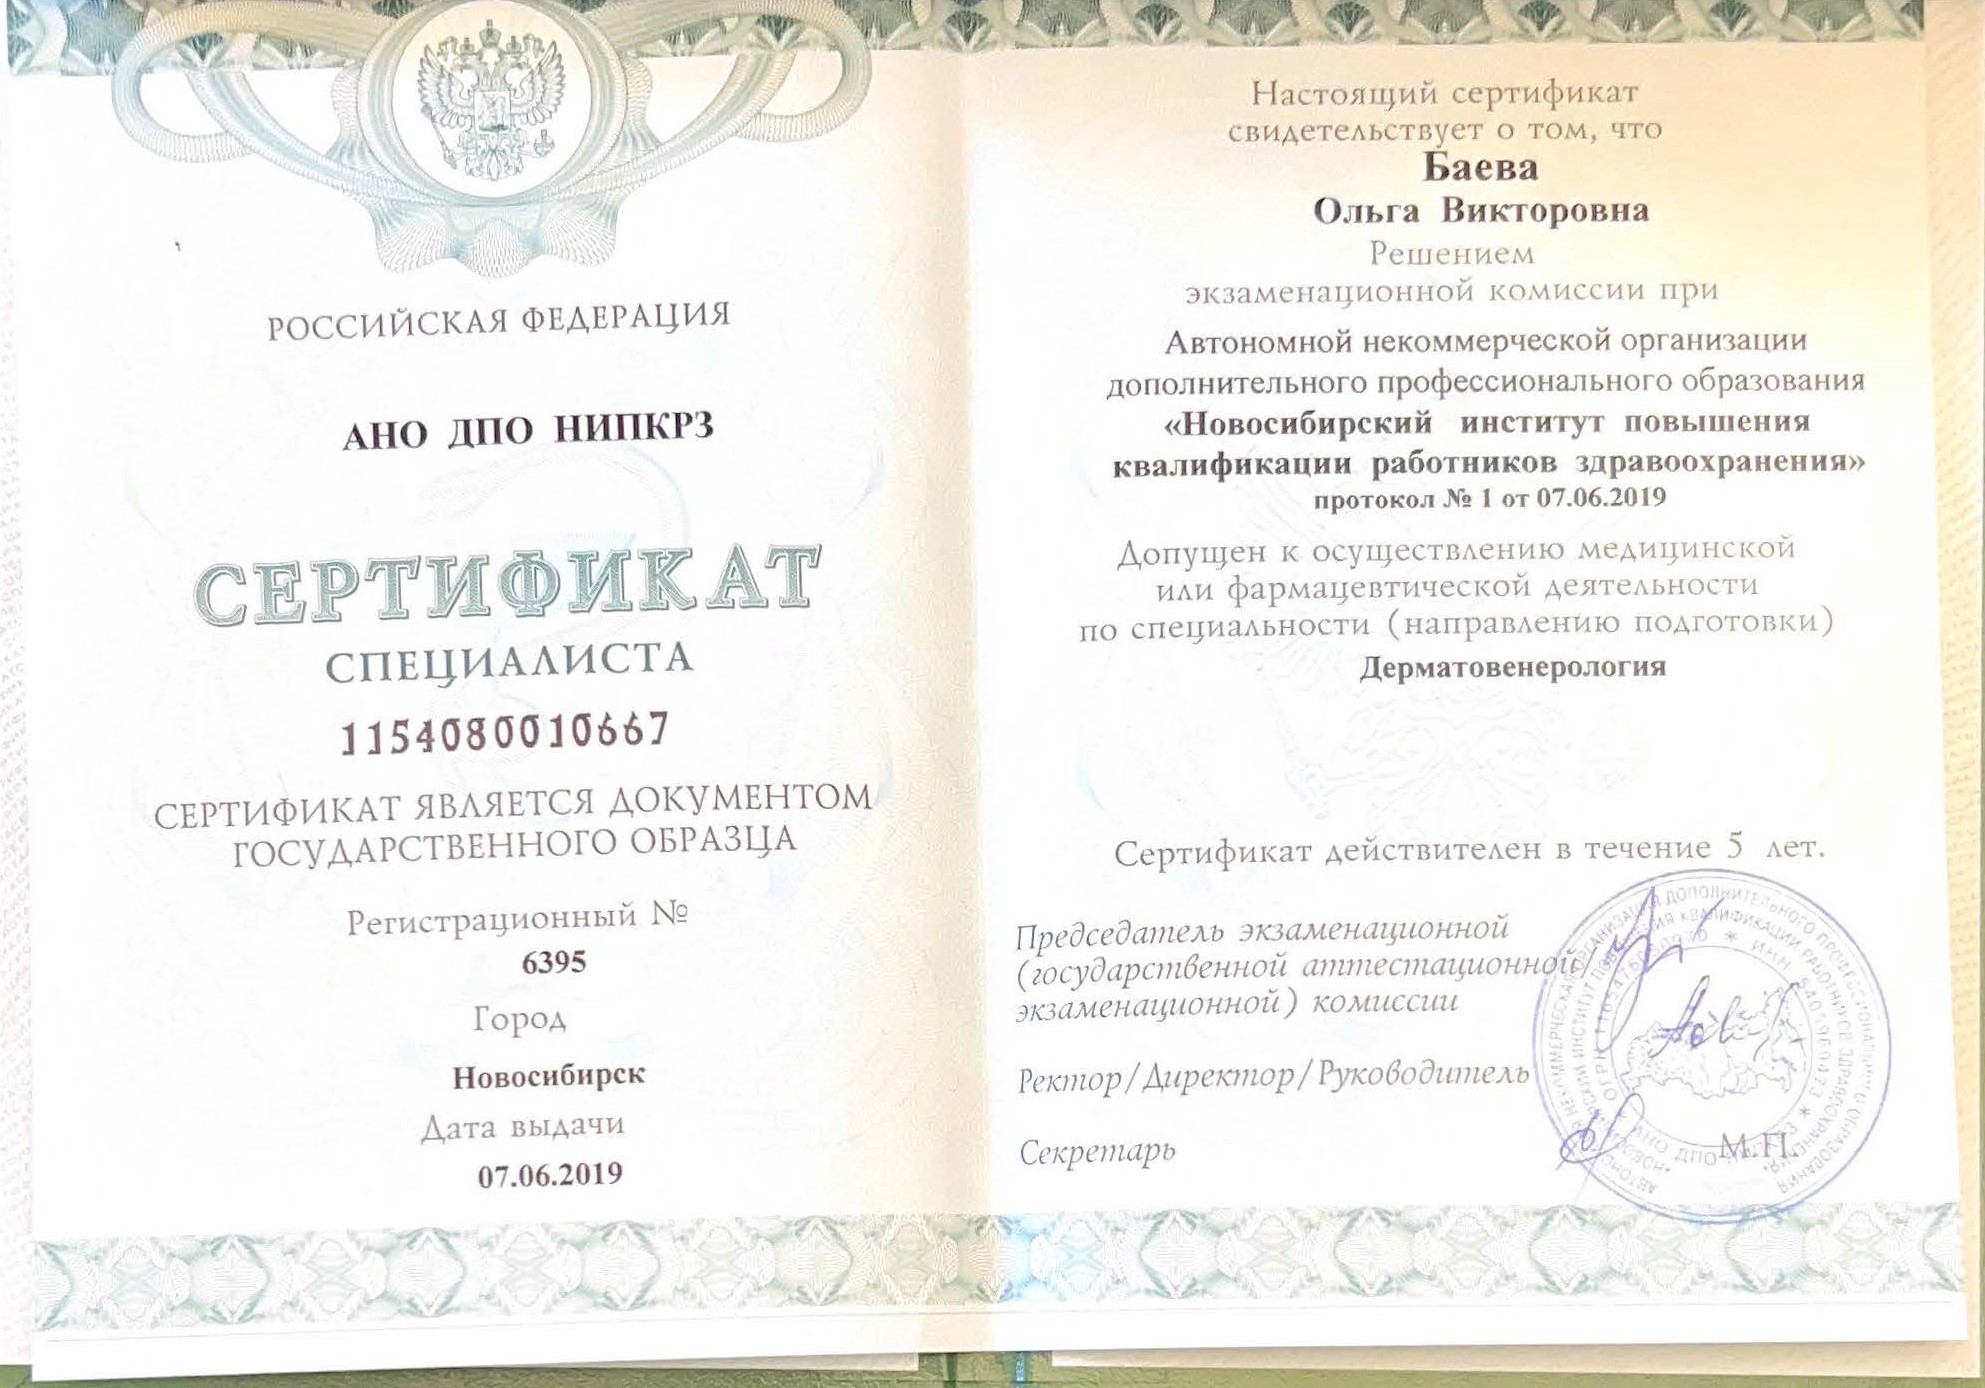 Сертификат специалиста Дерматовенерология 2019 г.